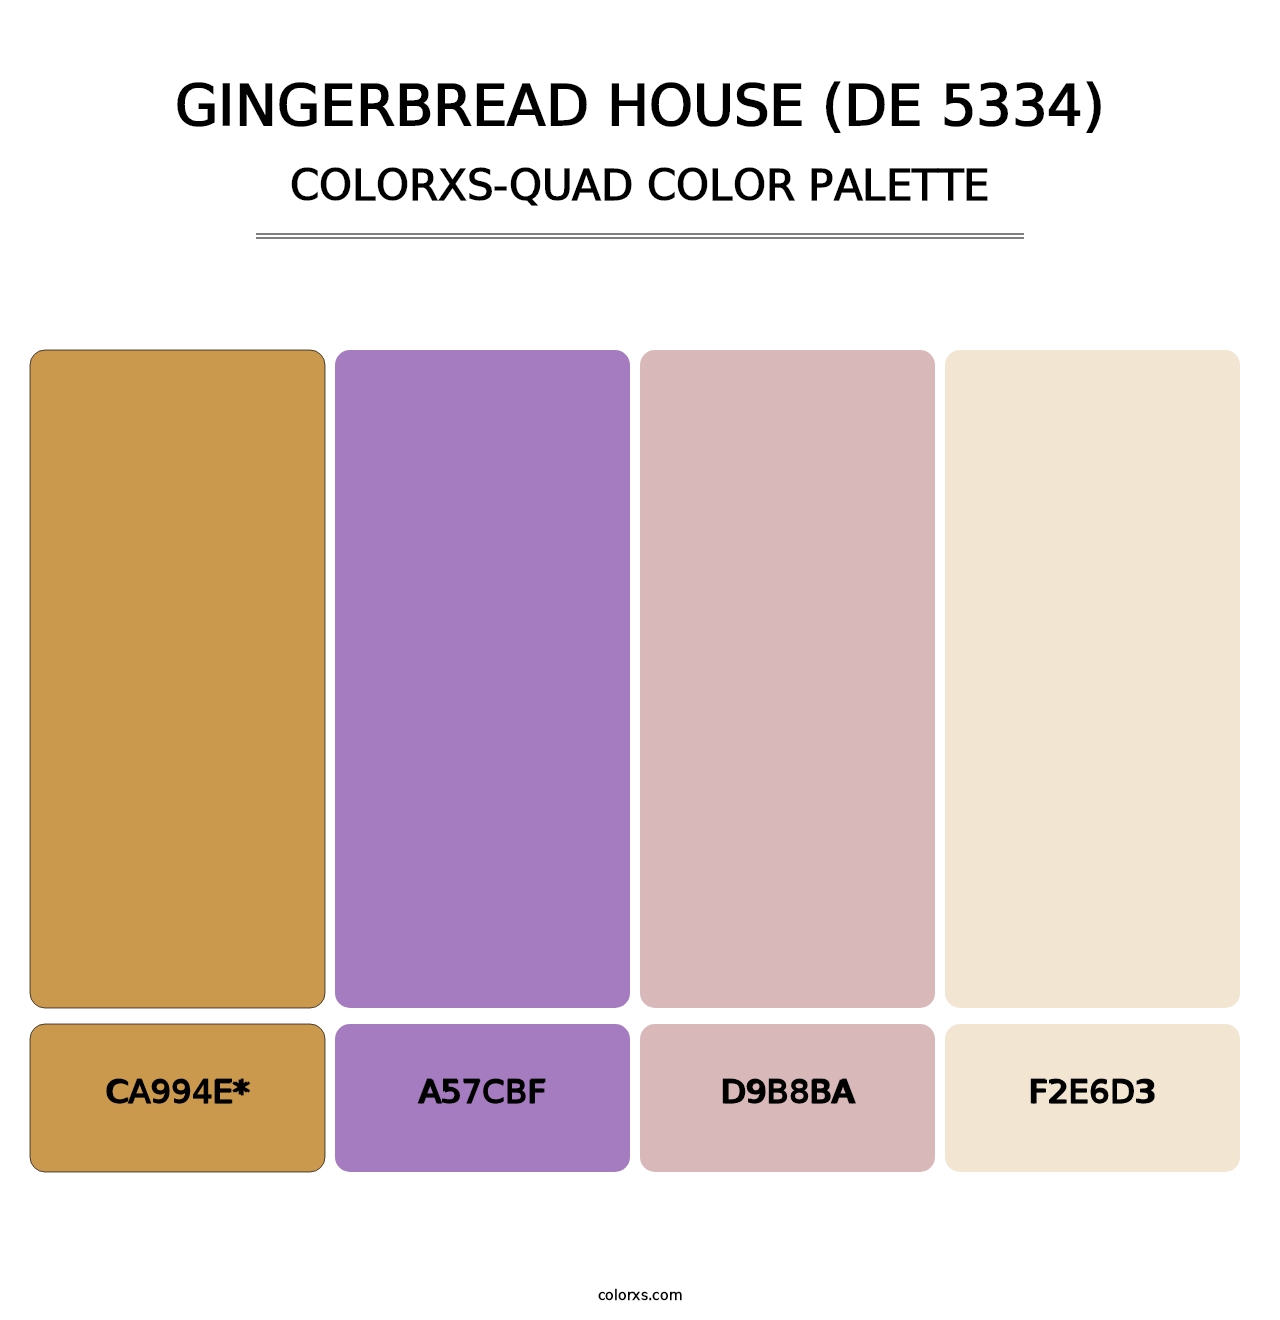 Gingerbread House (DE 5334) - Colorxs Quad Palette